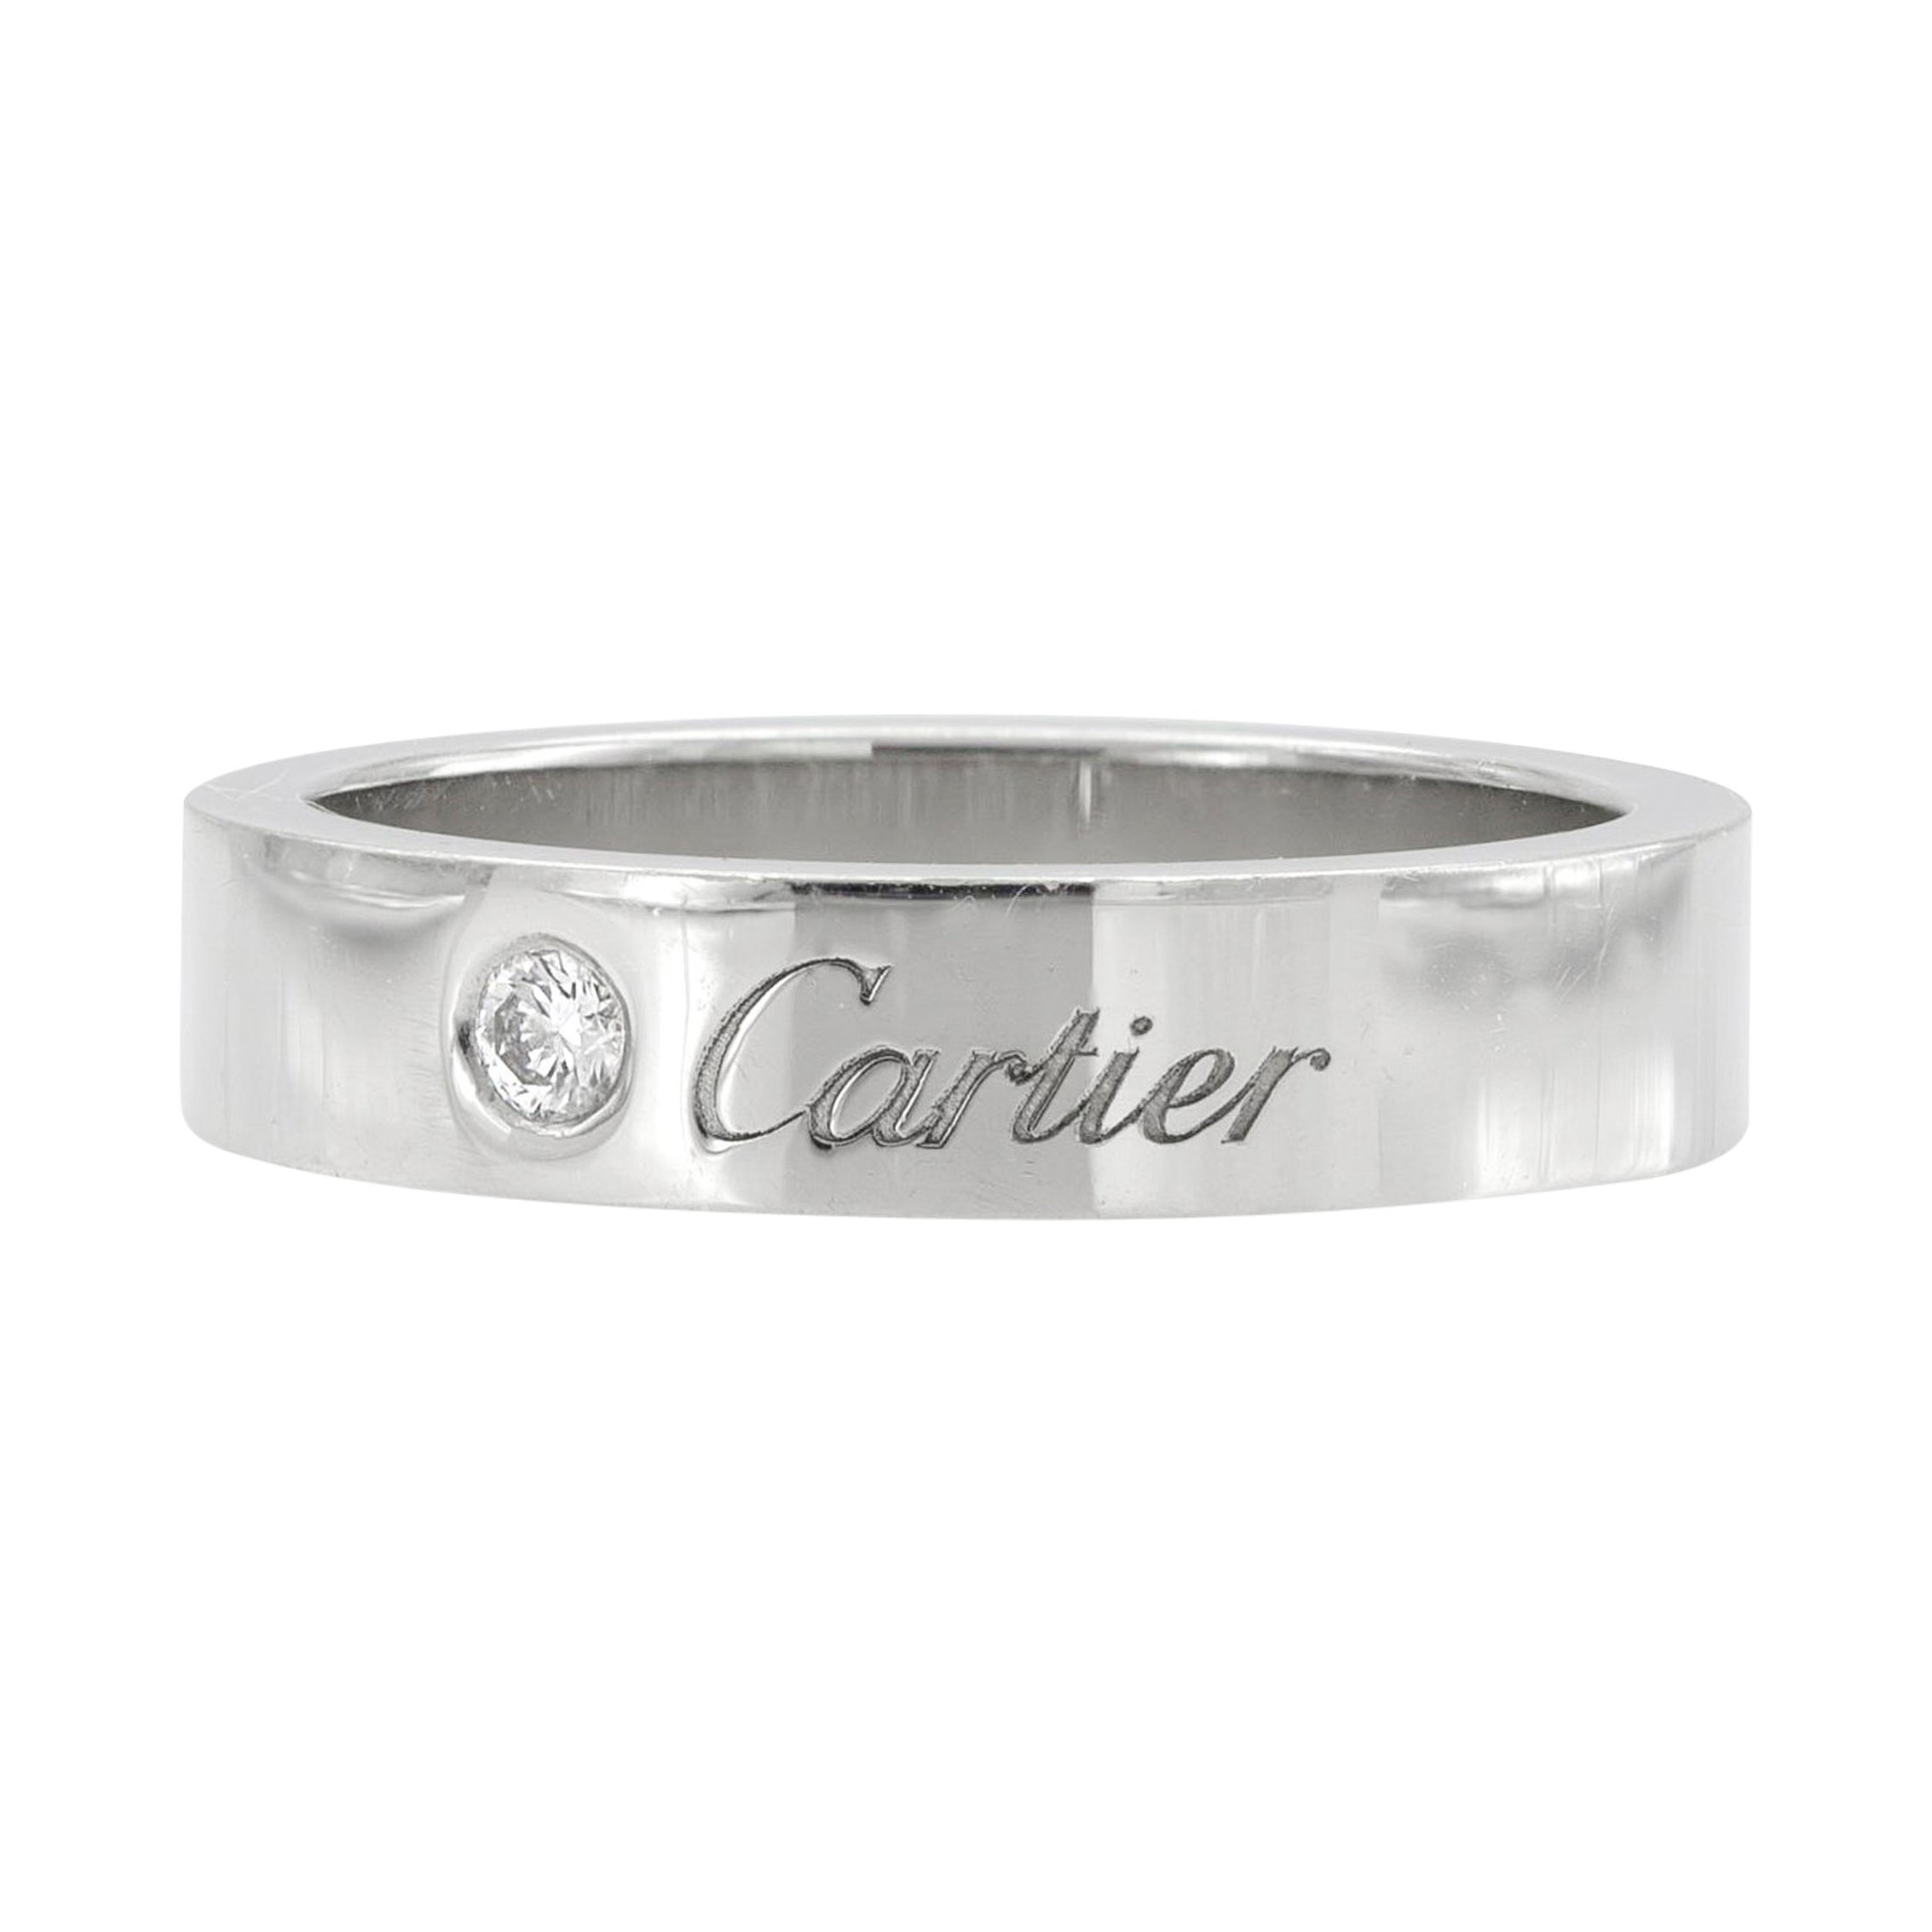 C de Cartier Ring For Sale